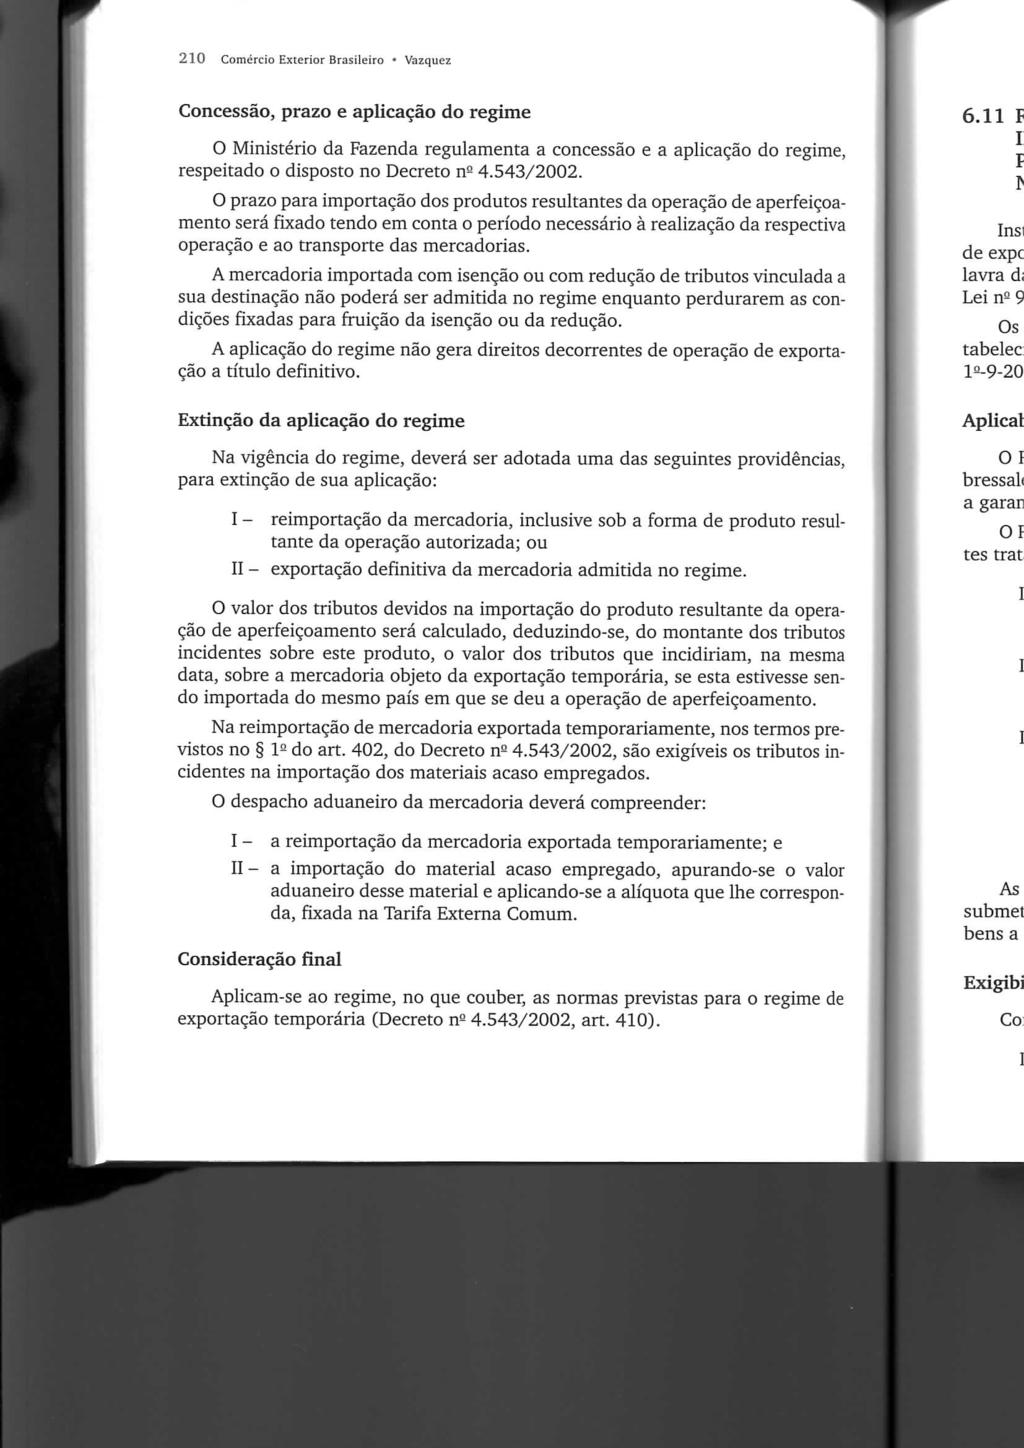 210 Comercio Exterior Brasileiro Vazquez Concessão, prazo e aplicação do regime O Ministério da Fazenda regulamenta a concessão e a aplicação do regime, respeitado o disposto no Decreto n- 4.543/2002.